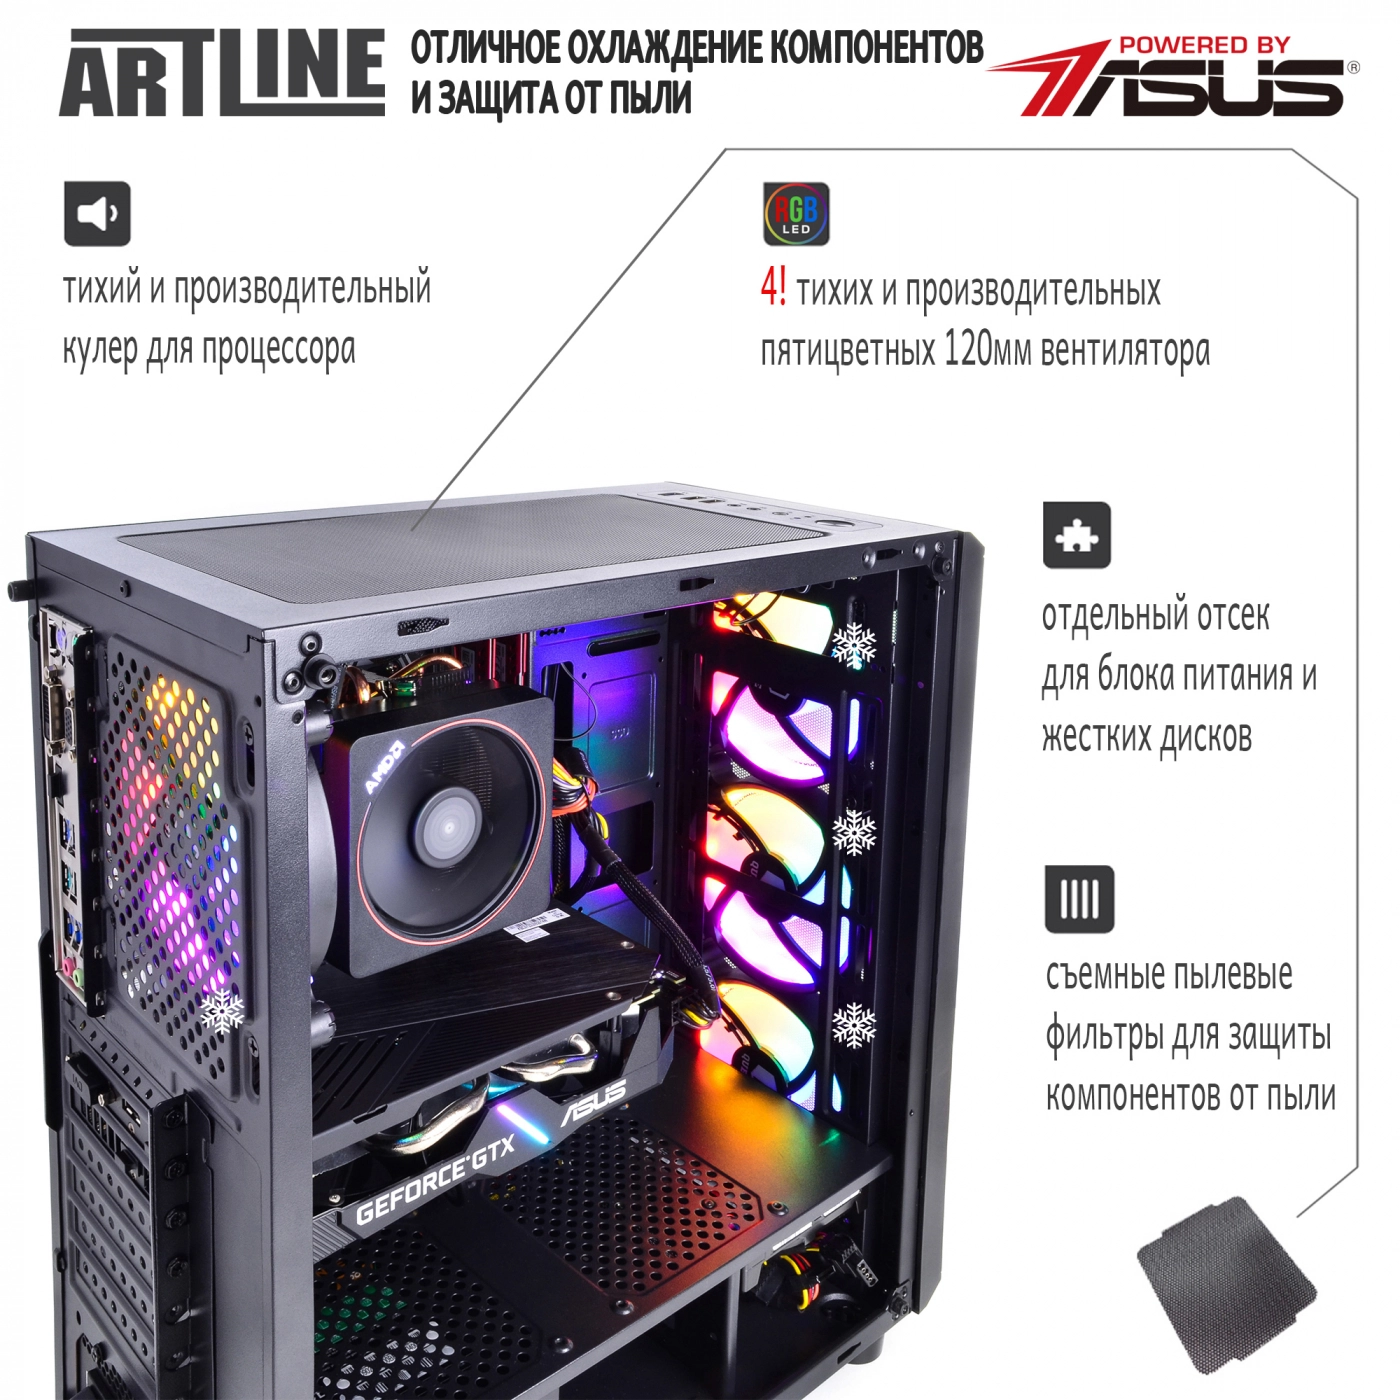 Купить Компьютер ARTLINE Gaming X64v09 - фото 3